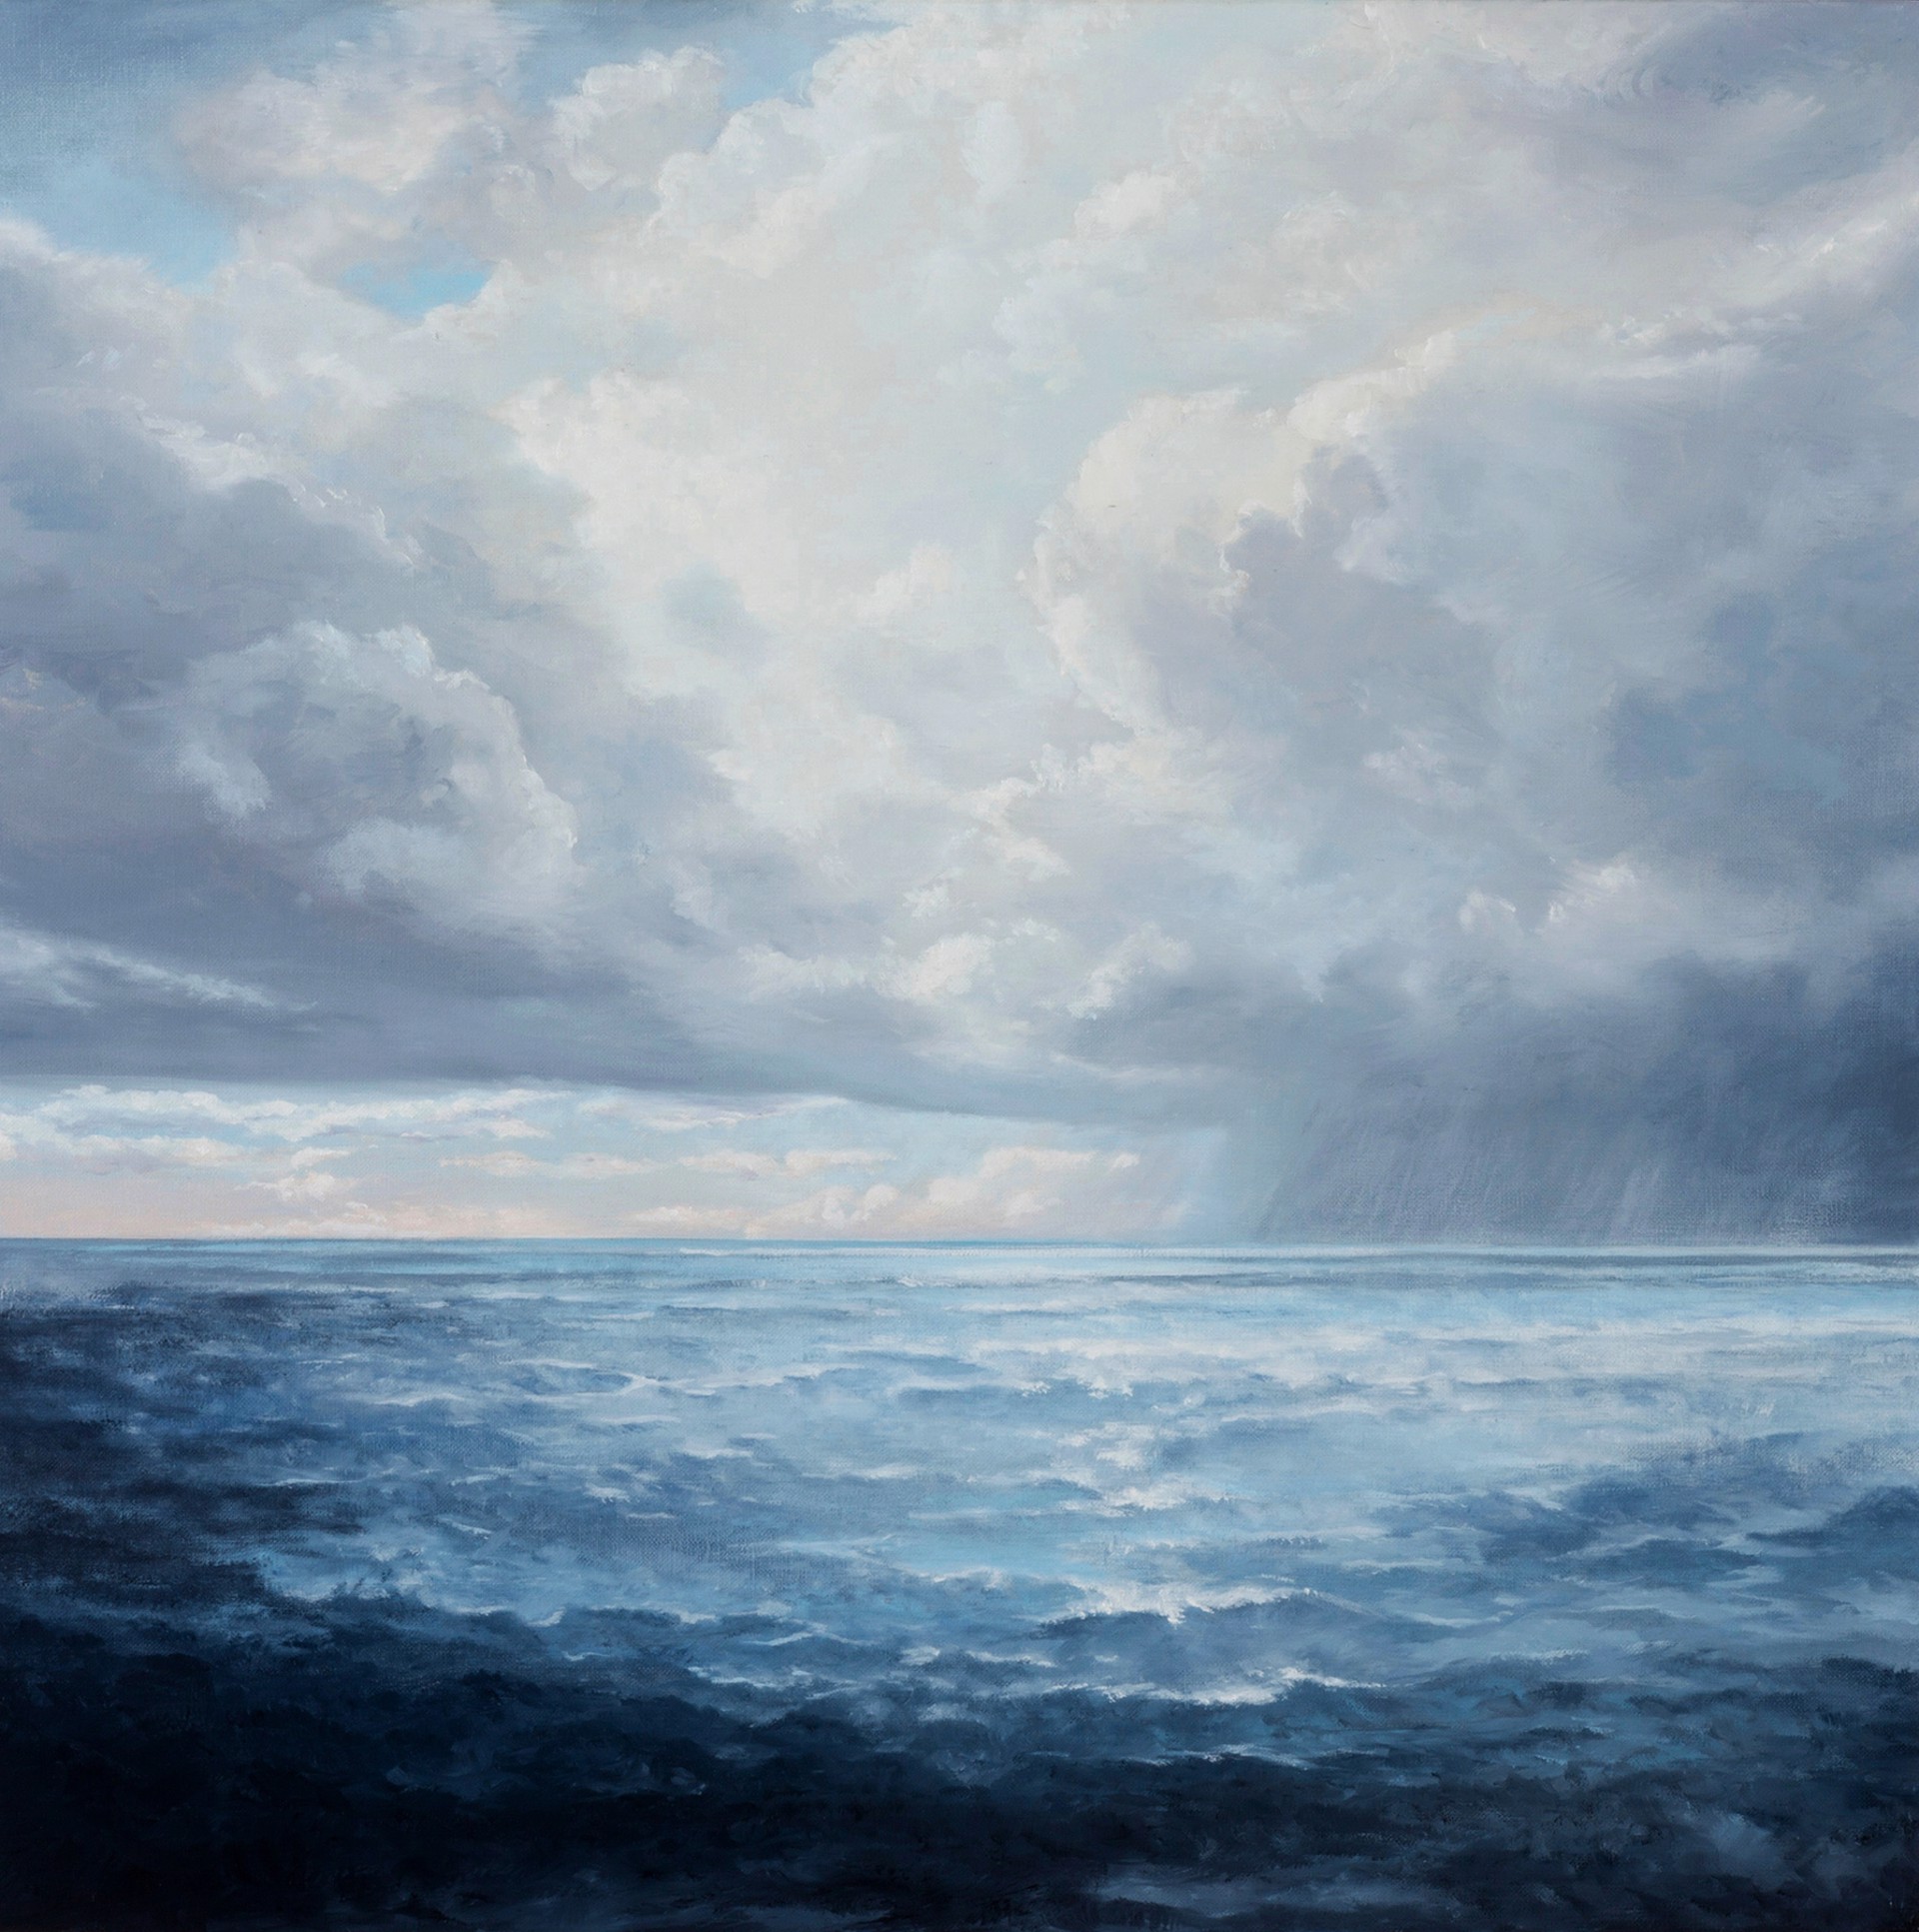 Shimmer Sea by Victoria Adams